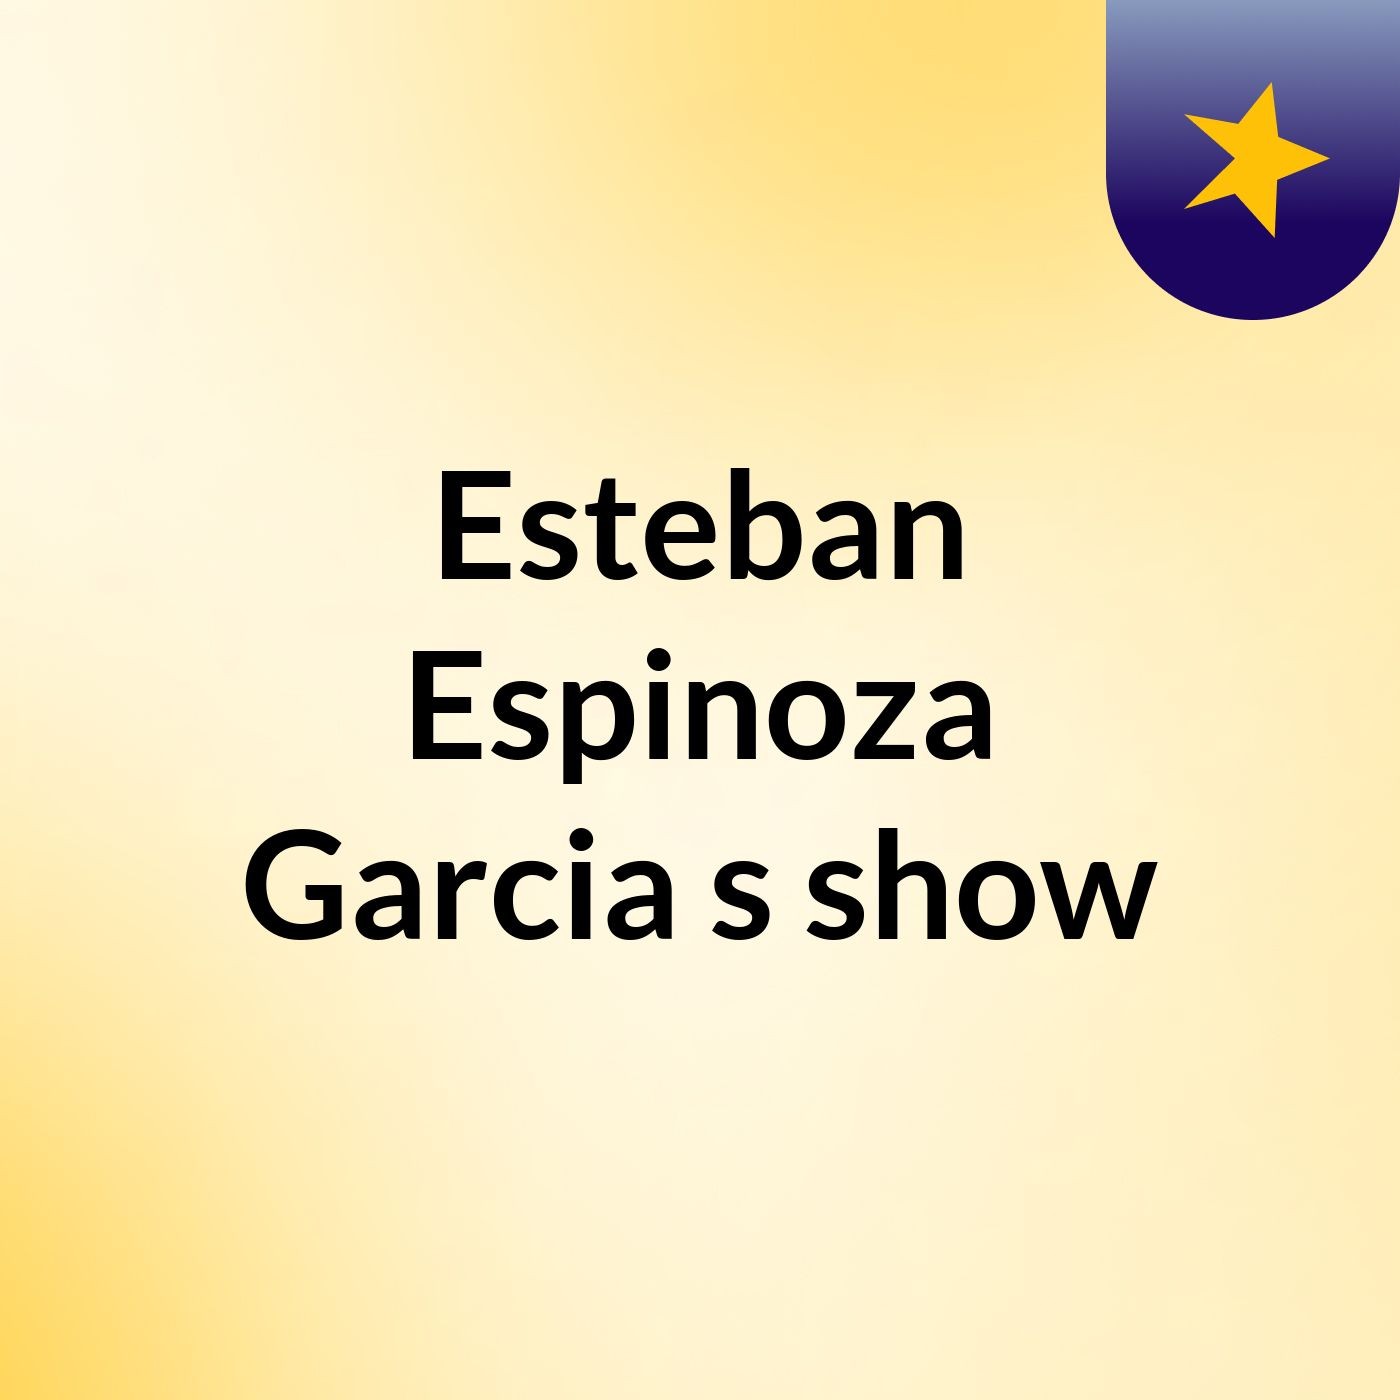 Esteban Espinoza Garcia's show